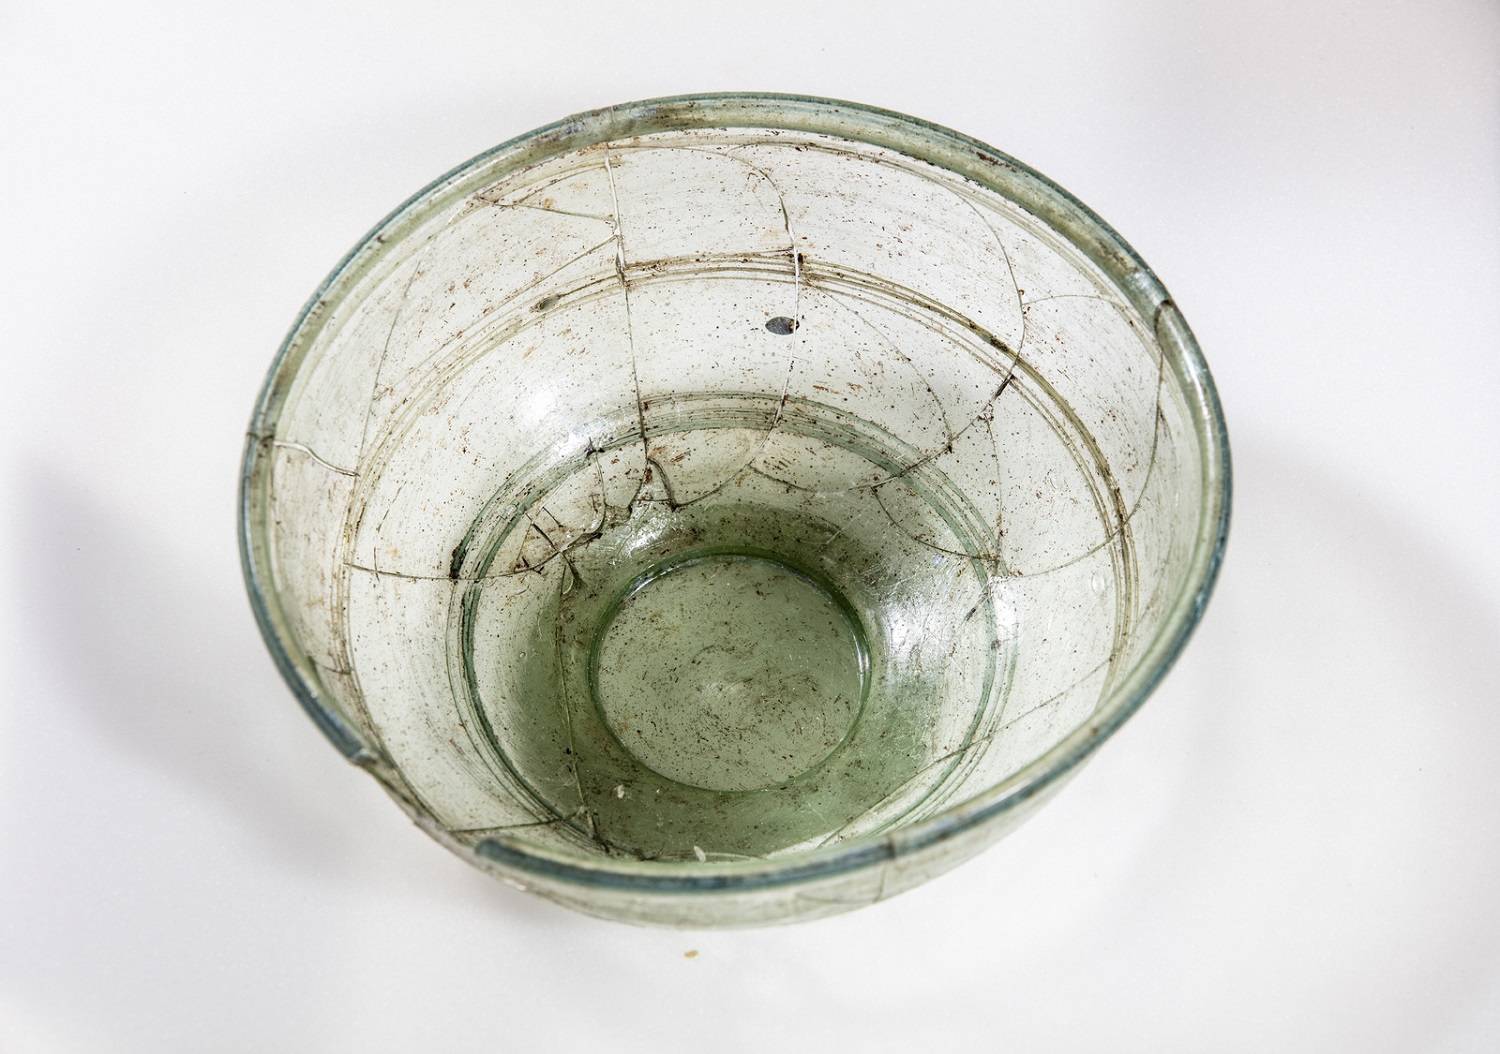 De gevonden glazen kom, waarschijnlijk afkomstig uit het begin van de 5e eeuw